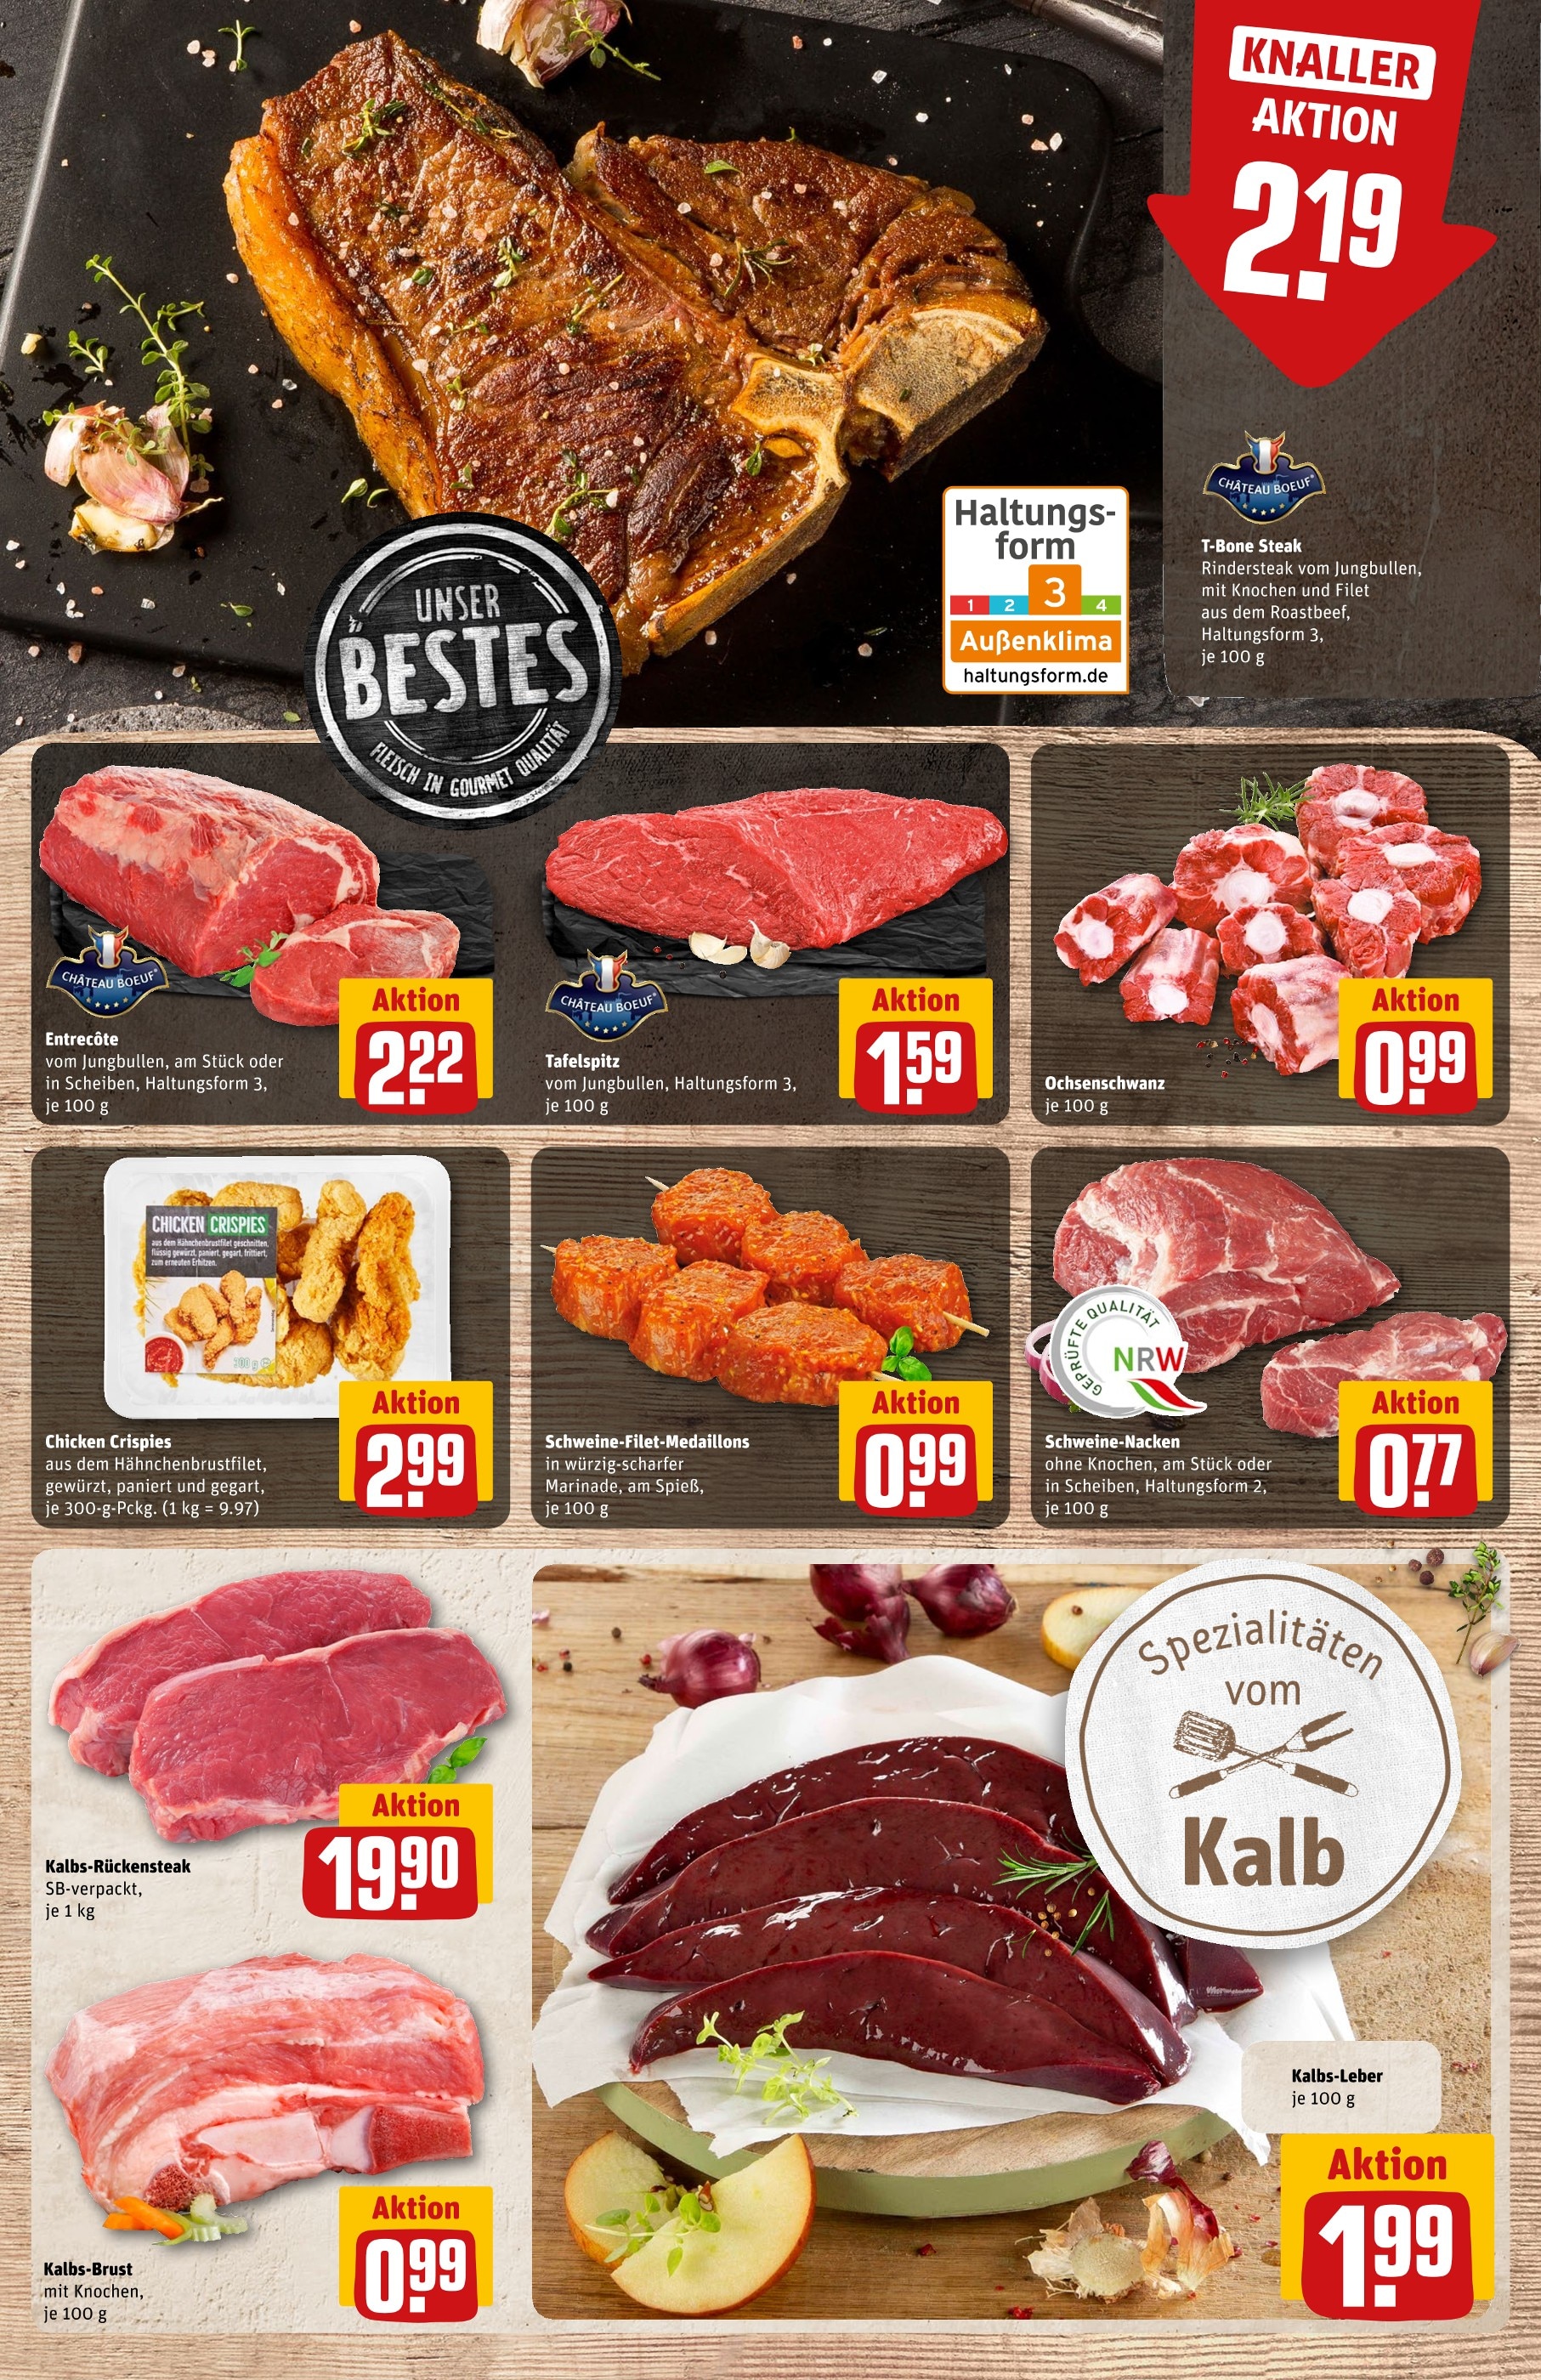 Steak kaufen in Mönchengladbach - in Angebote Mönchengladbach günstige